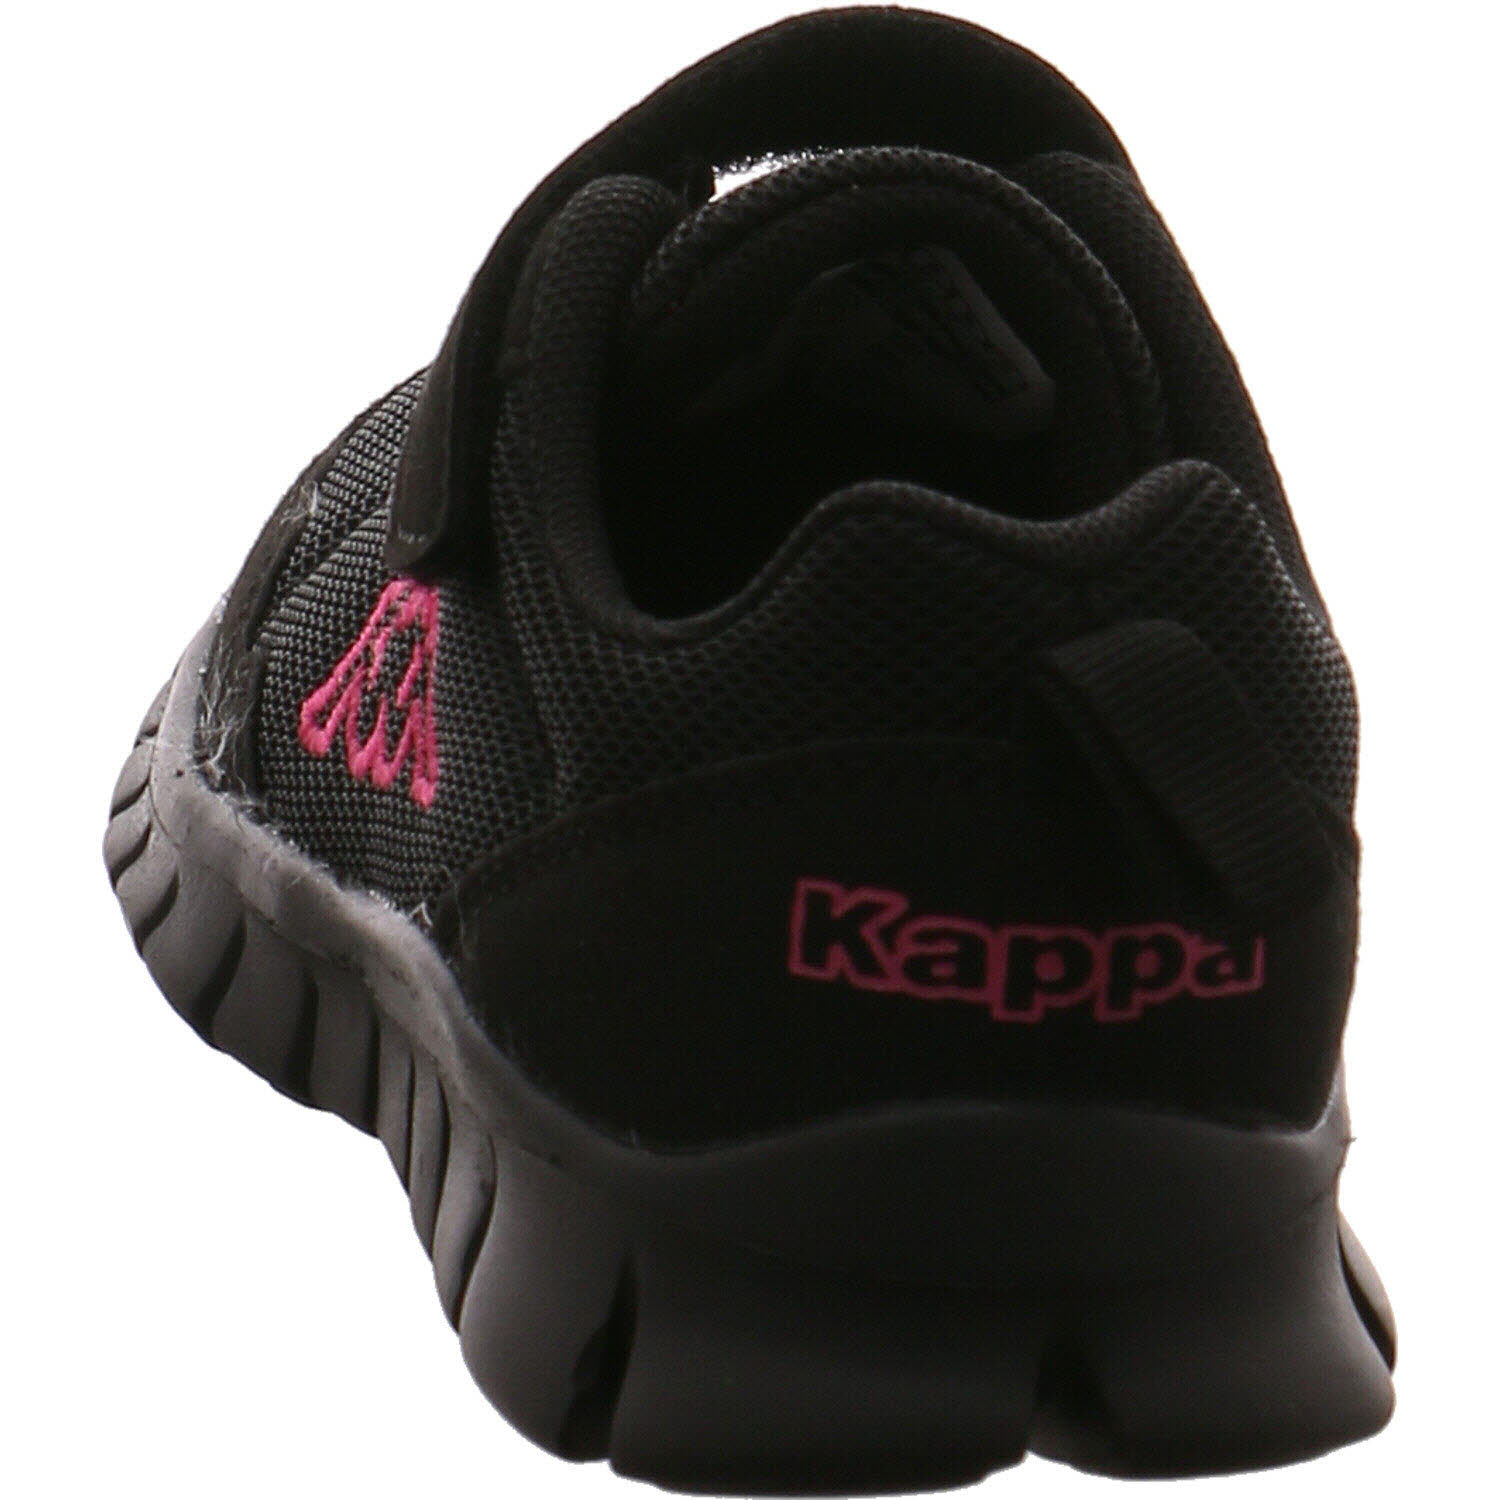 Stylecode: | 260982 Mädchen VALDIS P&P Shoes OC low für Sneaker schwarz/pink K Kappa in